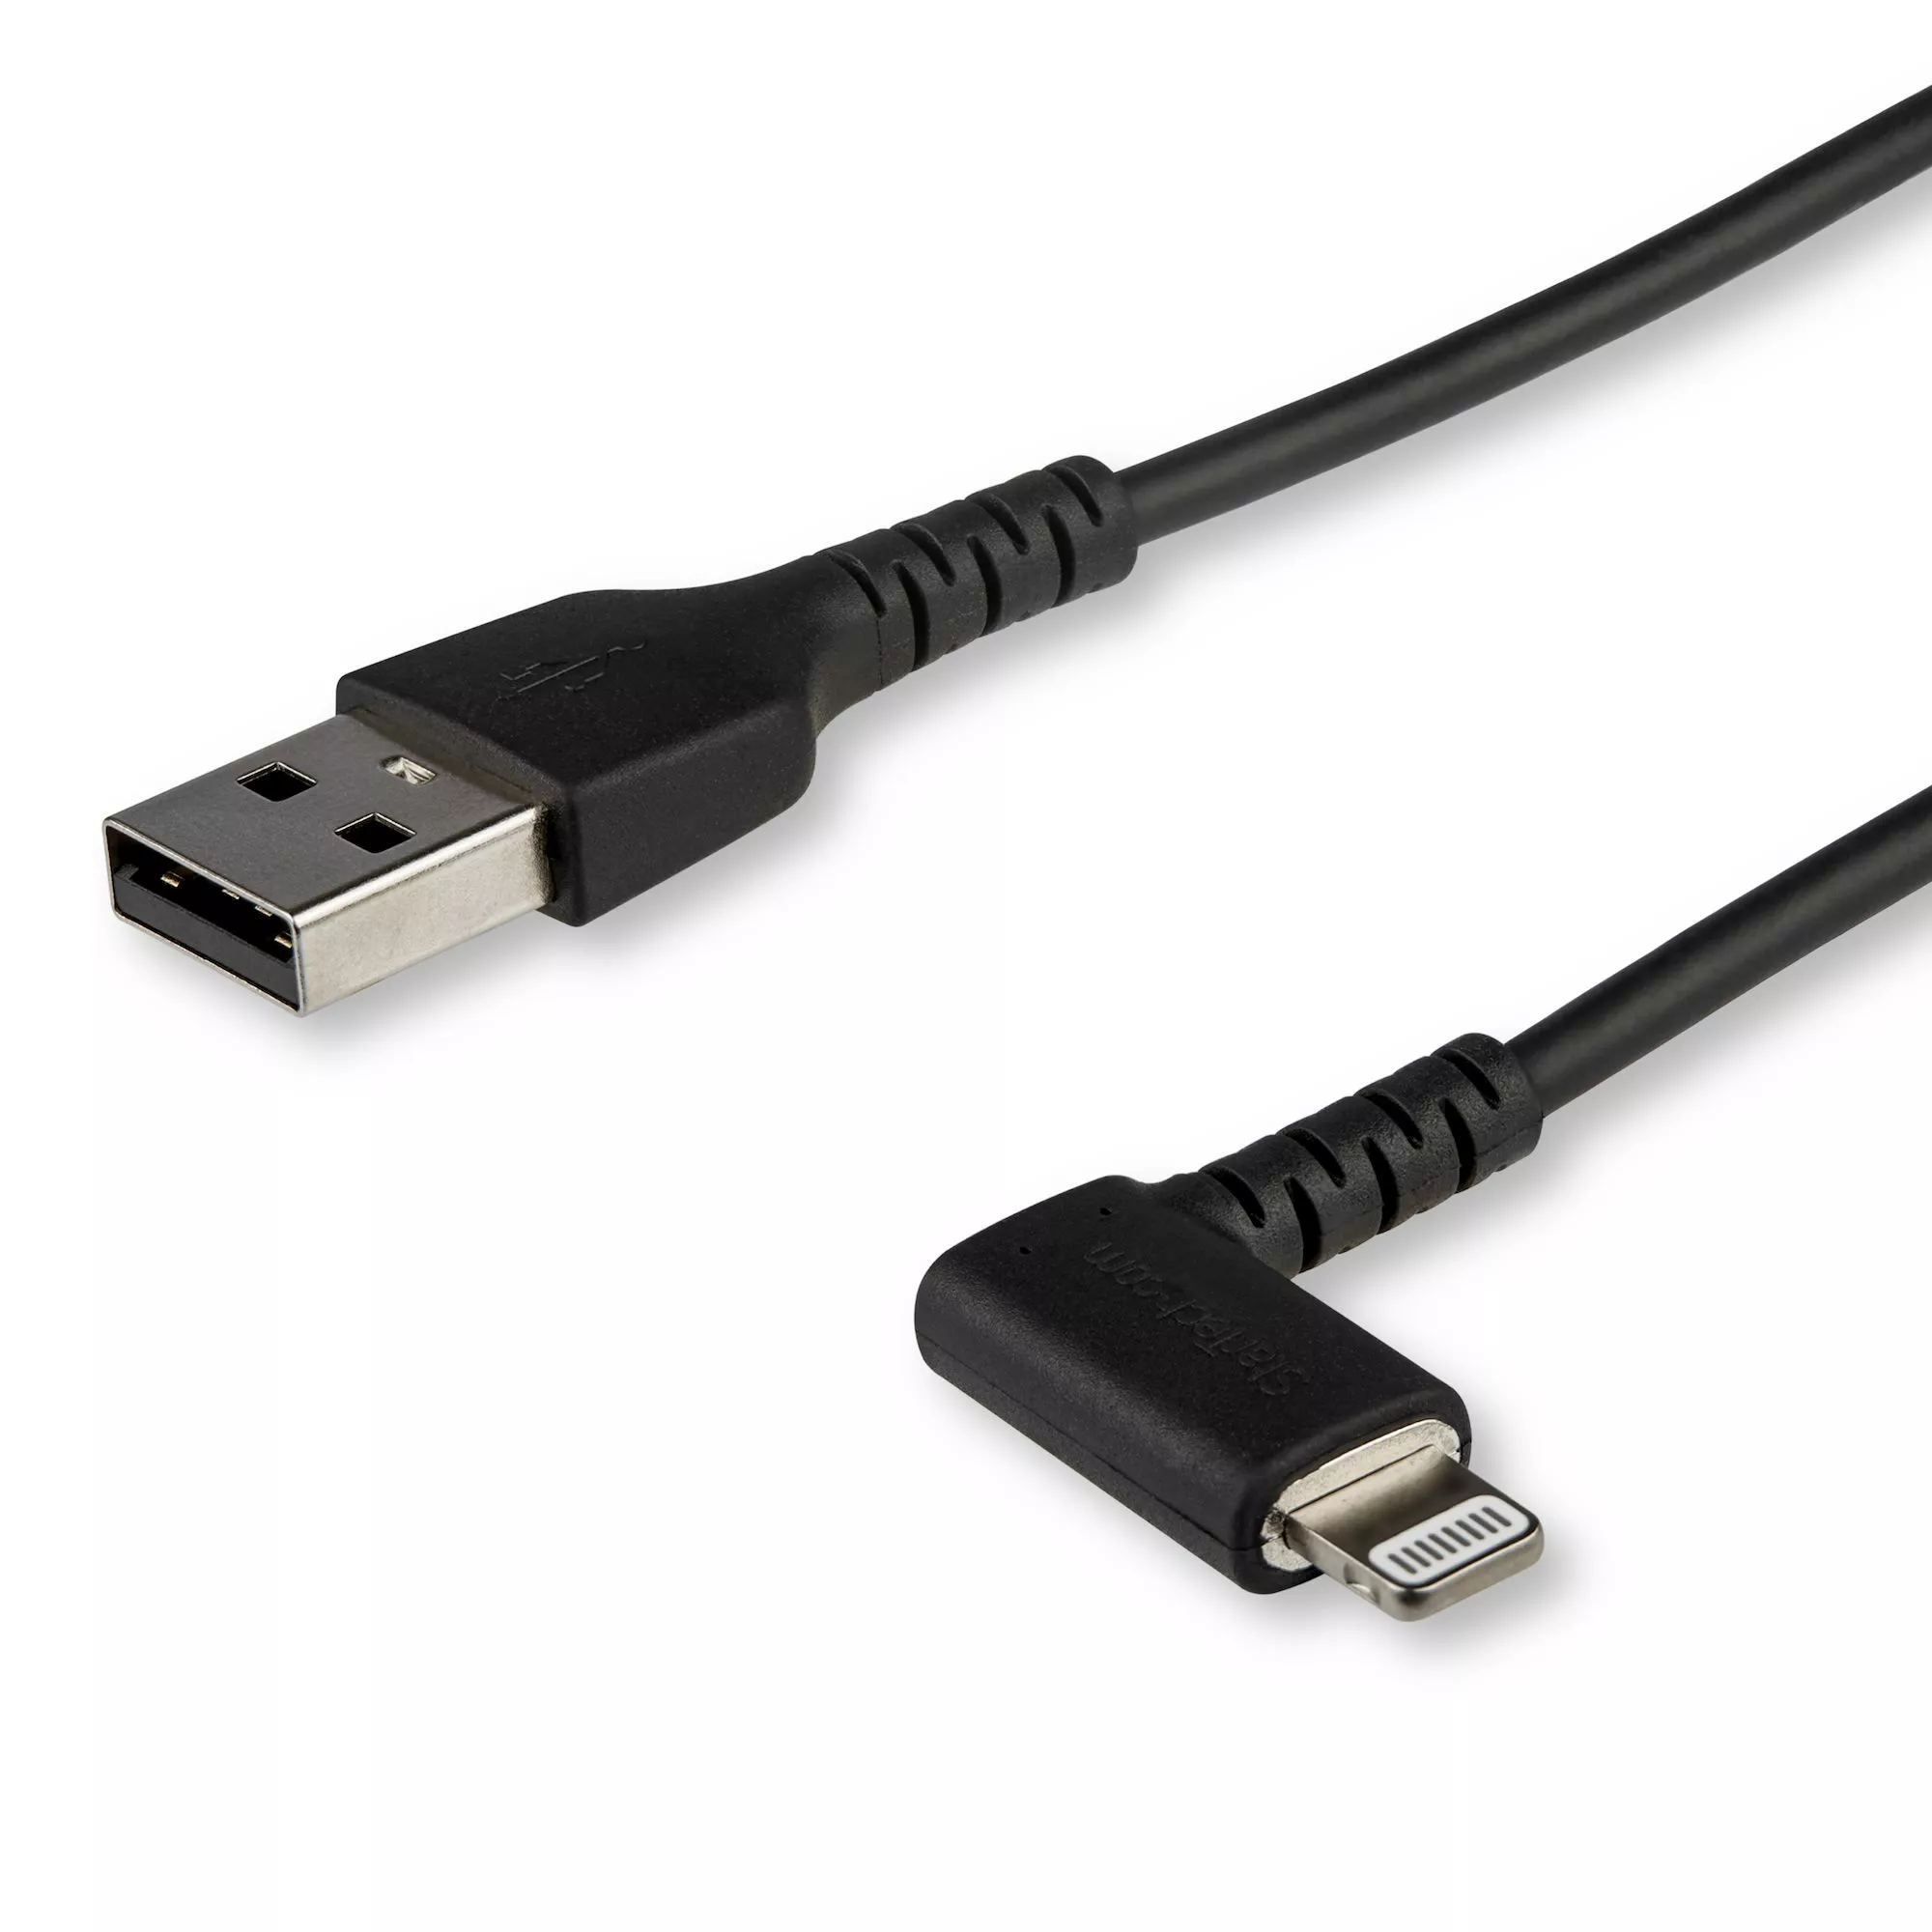 Achat StarTech.com Câble USB-A vers Lightning Noir Robuste 1m au meilleur prix